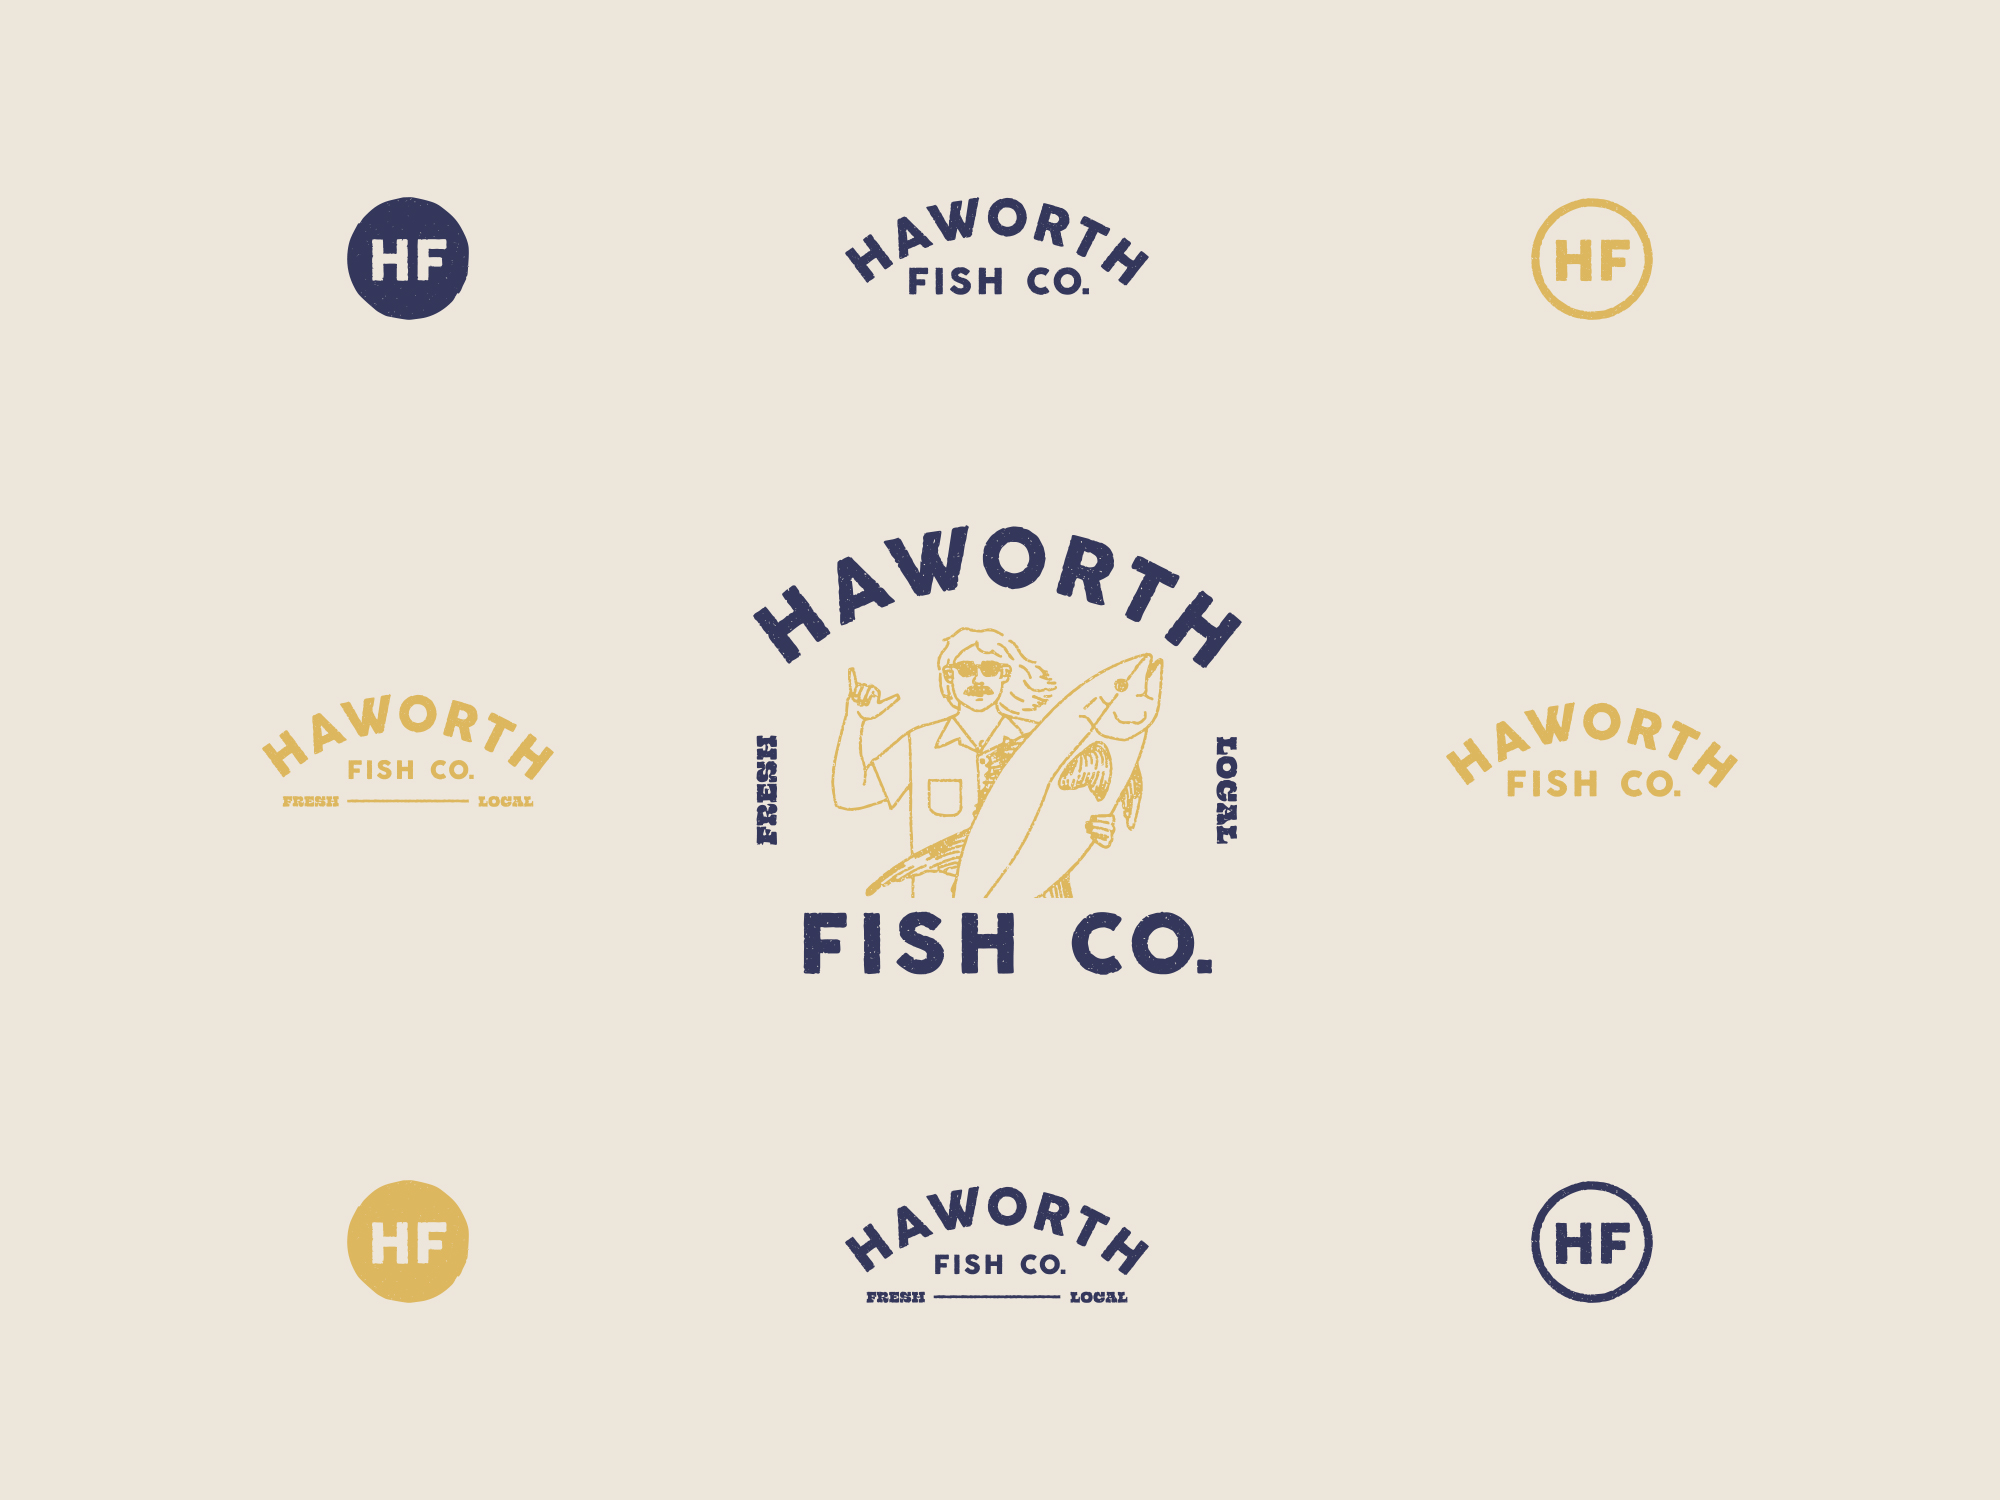 Haworth Fish Logos